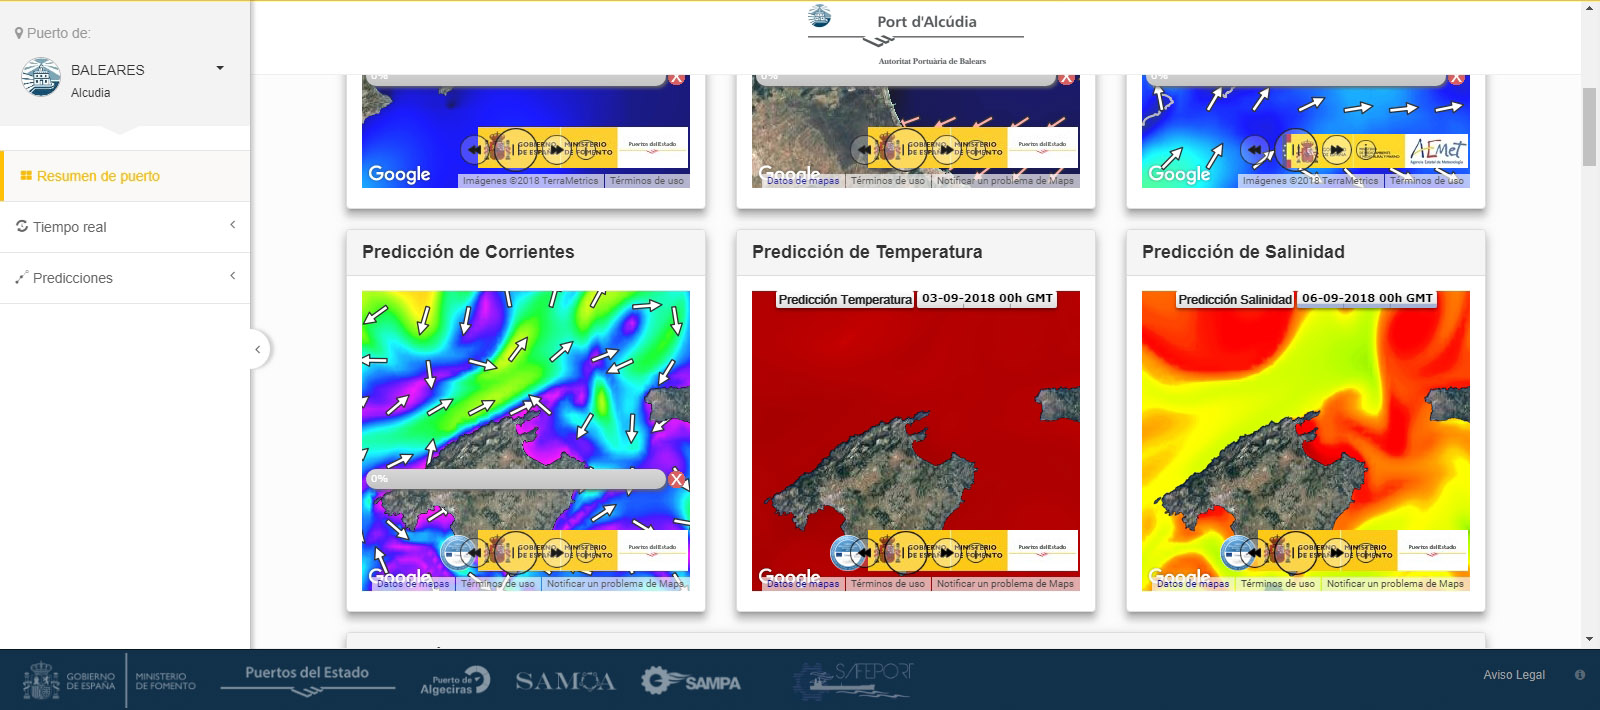 Die APB schafft anhand des Systems SAMOA einen Online-Dienst für meteorologische und meereskundliche Warnmeldungen für ihre Häfen